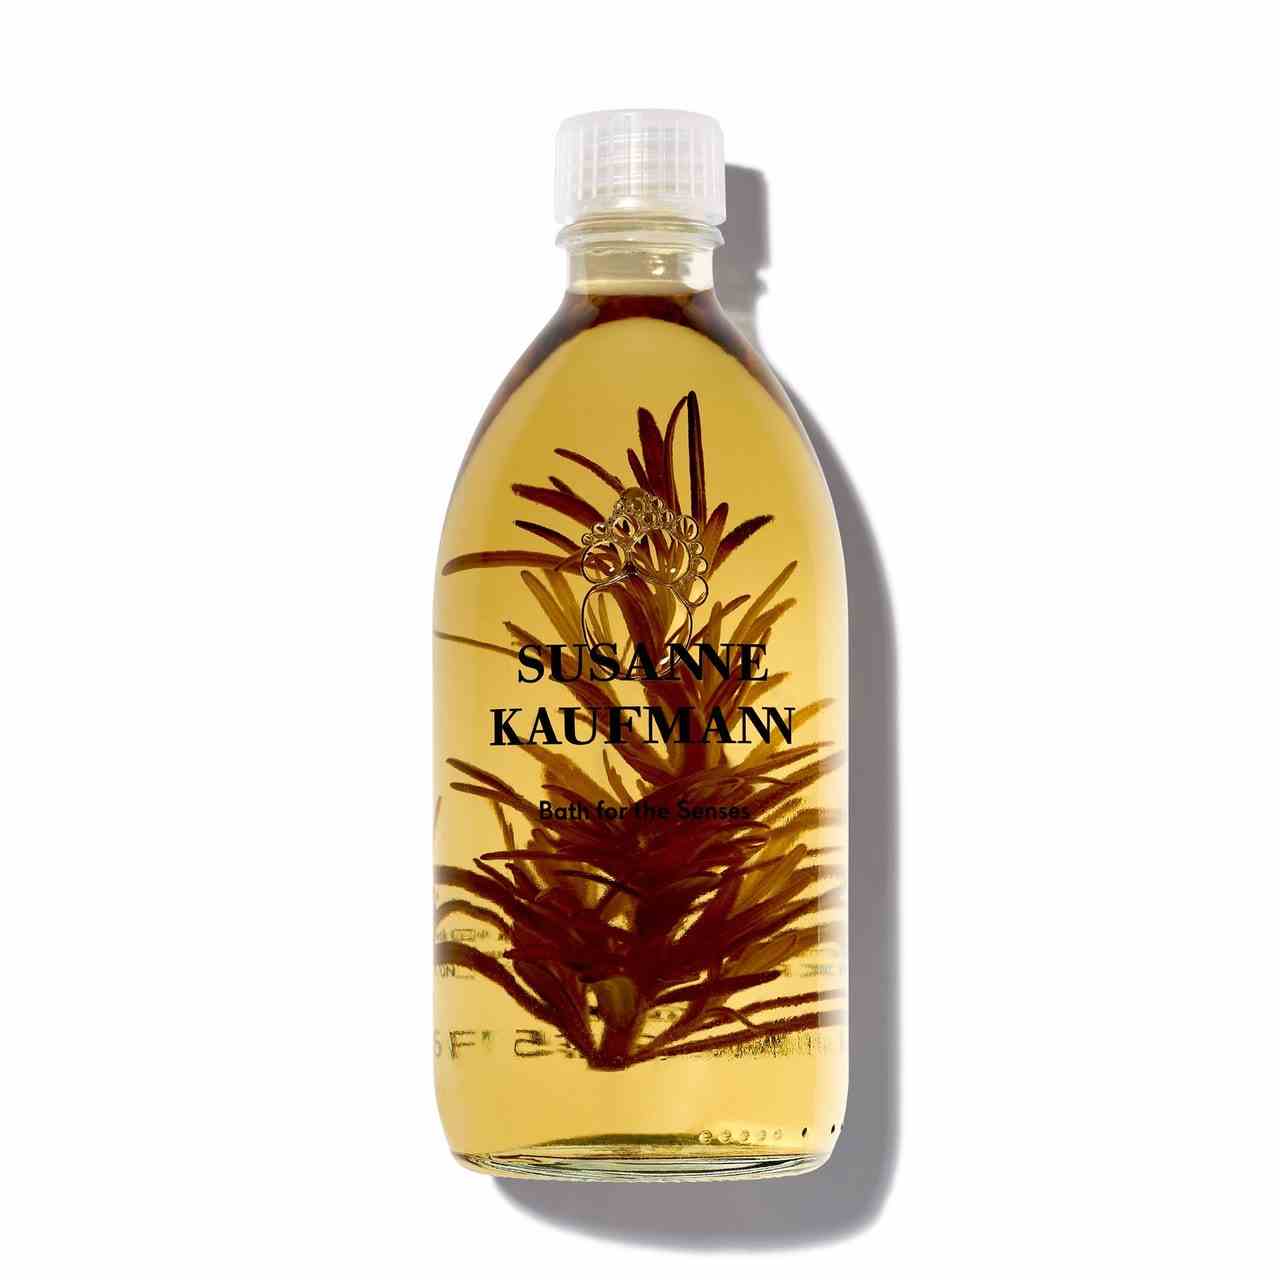 Susanne Kaufmann Ölbad für die Sinne abgerundete Flasche goldenes Badeöl mit Pflanze im Inneren auf weißem Hintergrund